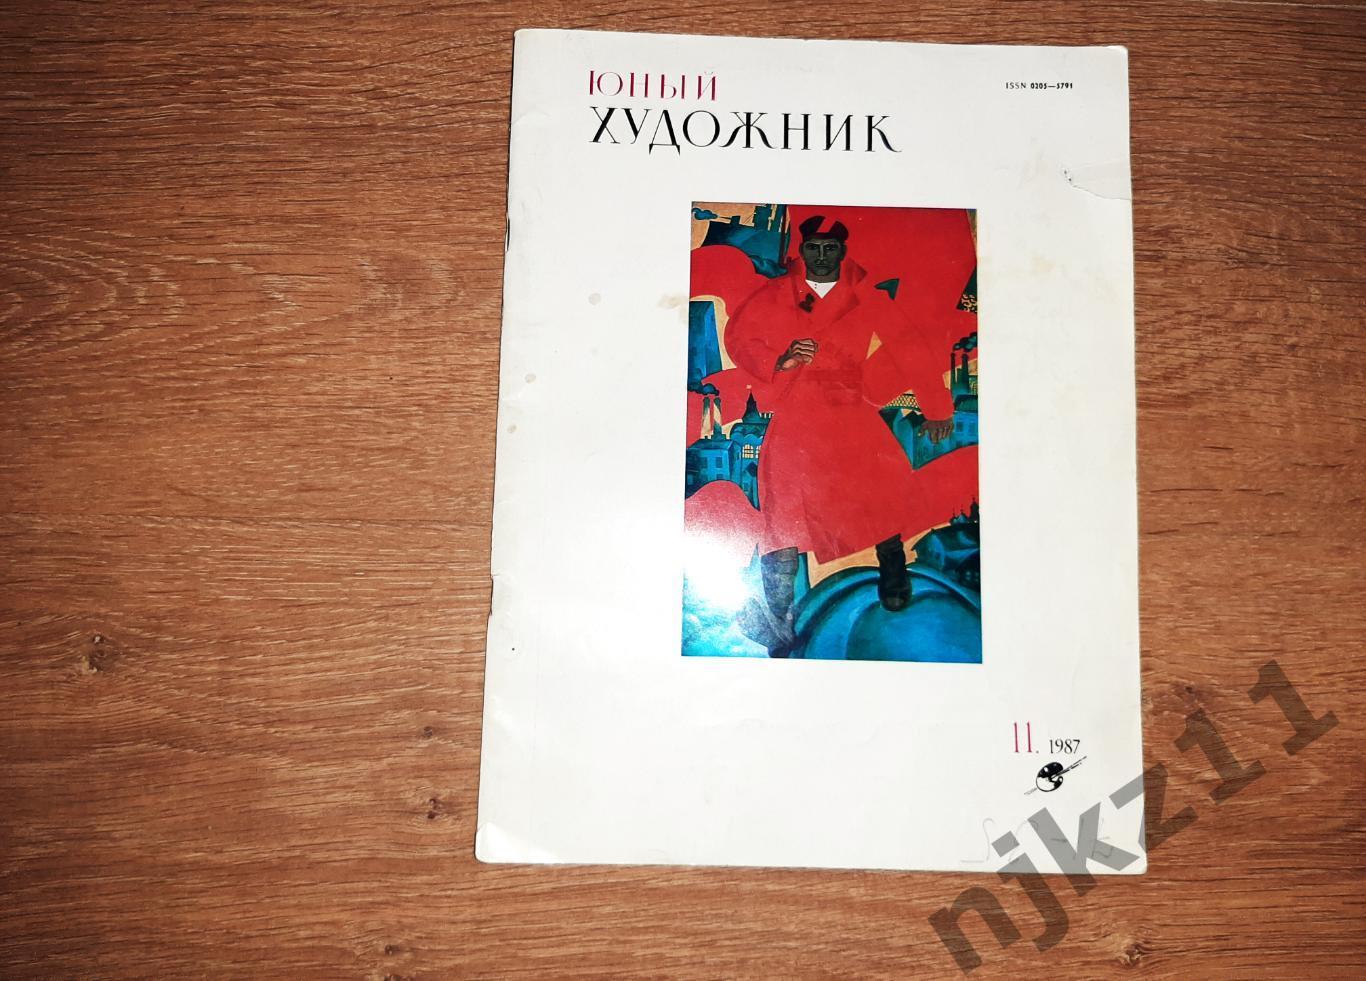 Журнал Юный Художник № 11 за 1987г Жилинский, Кустодиев